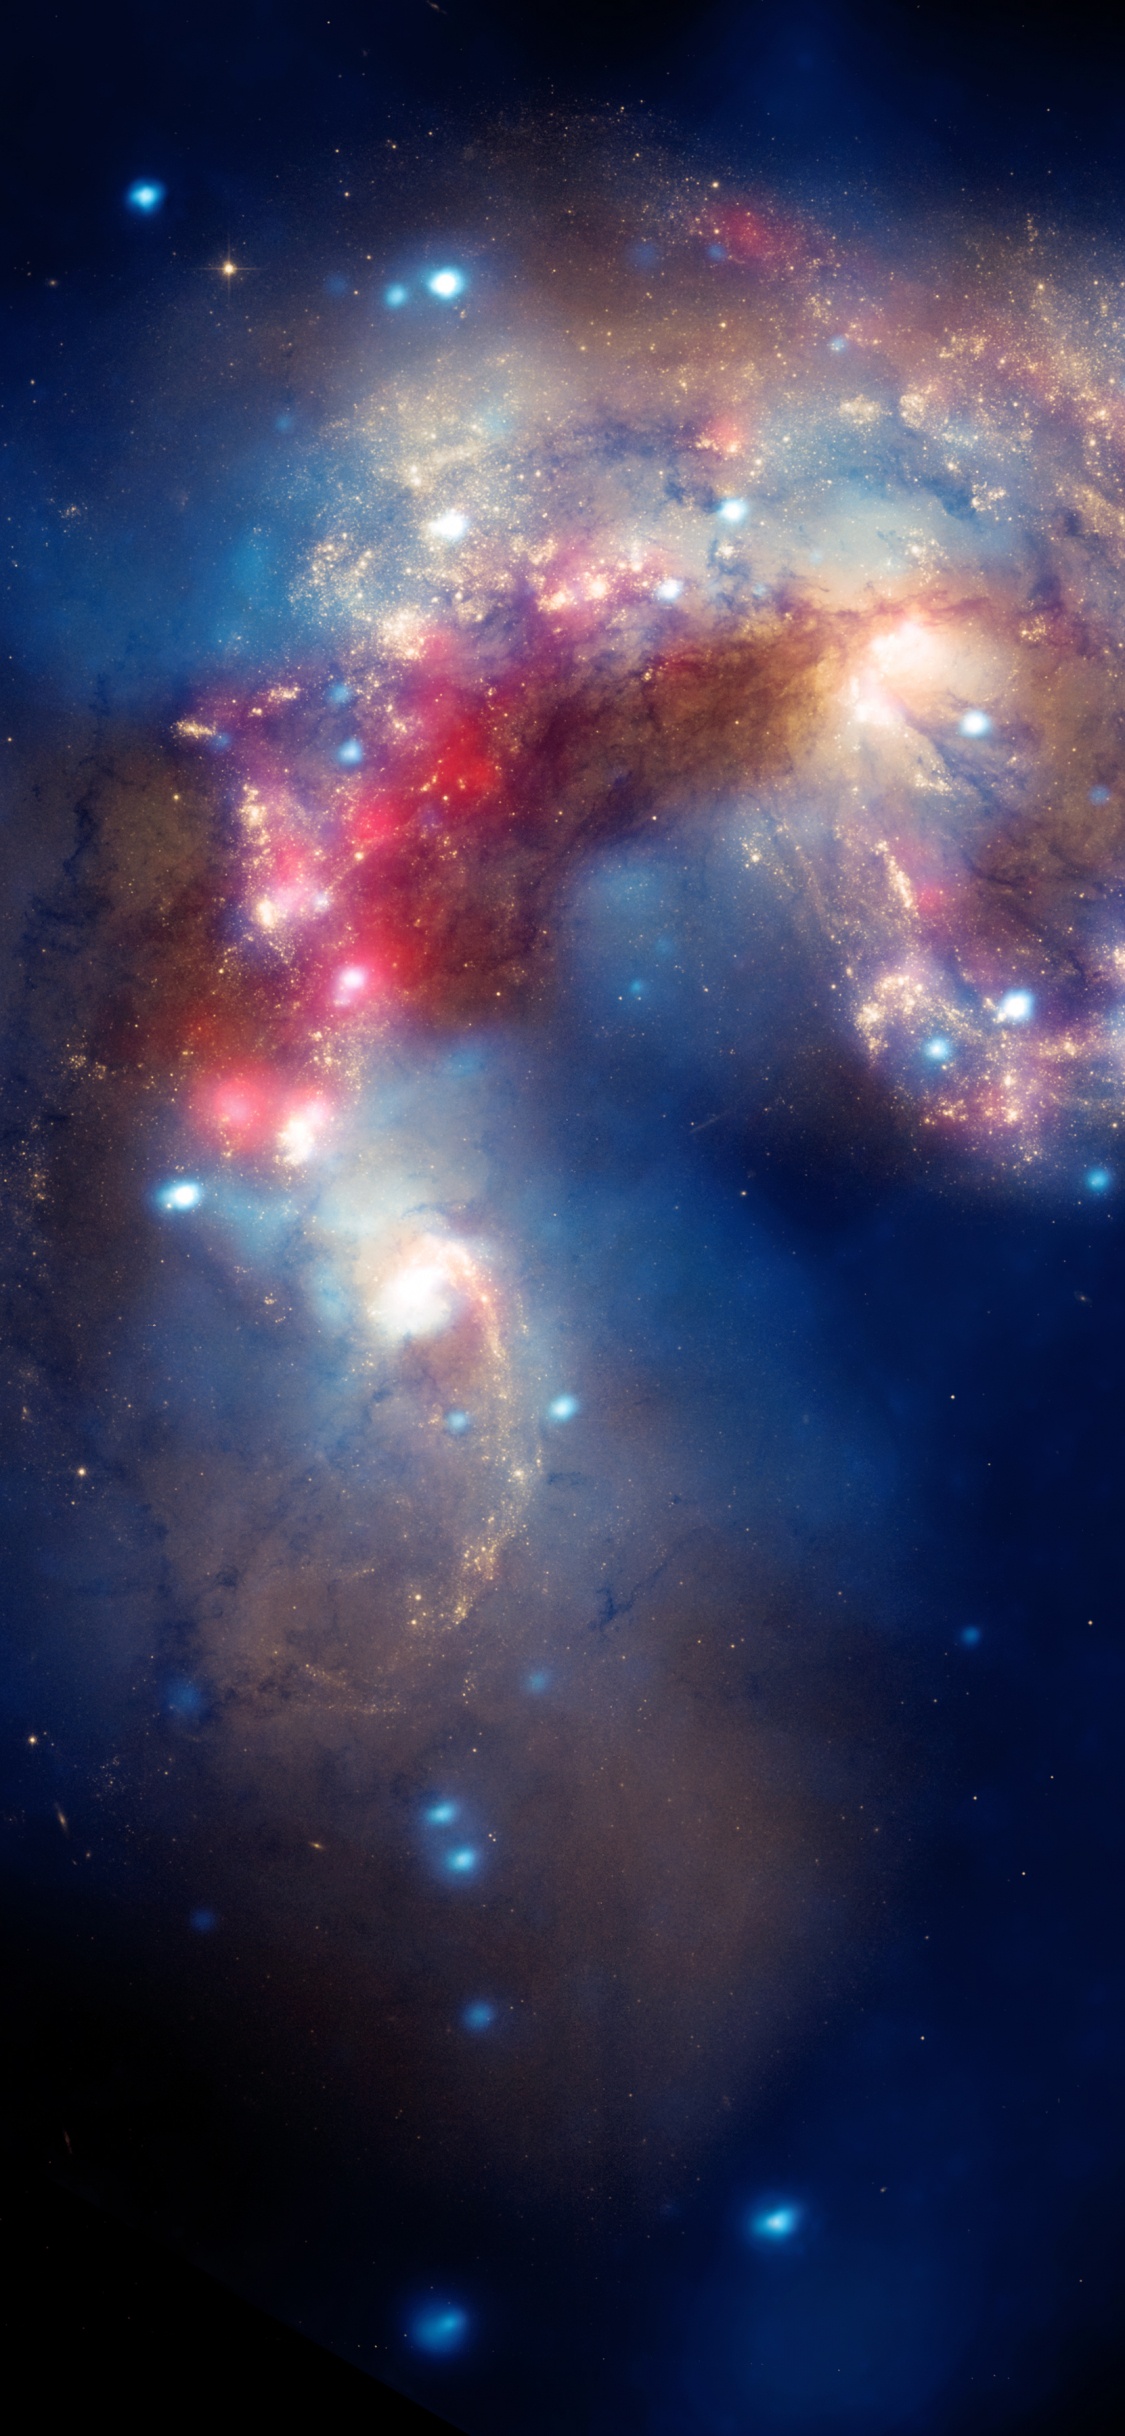 哈勃太空望远镜, 天文学, 天文学对象, 外层空间, 宇宙 壁纸 1125x2436 允许